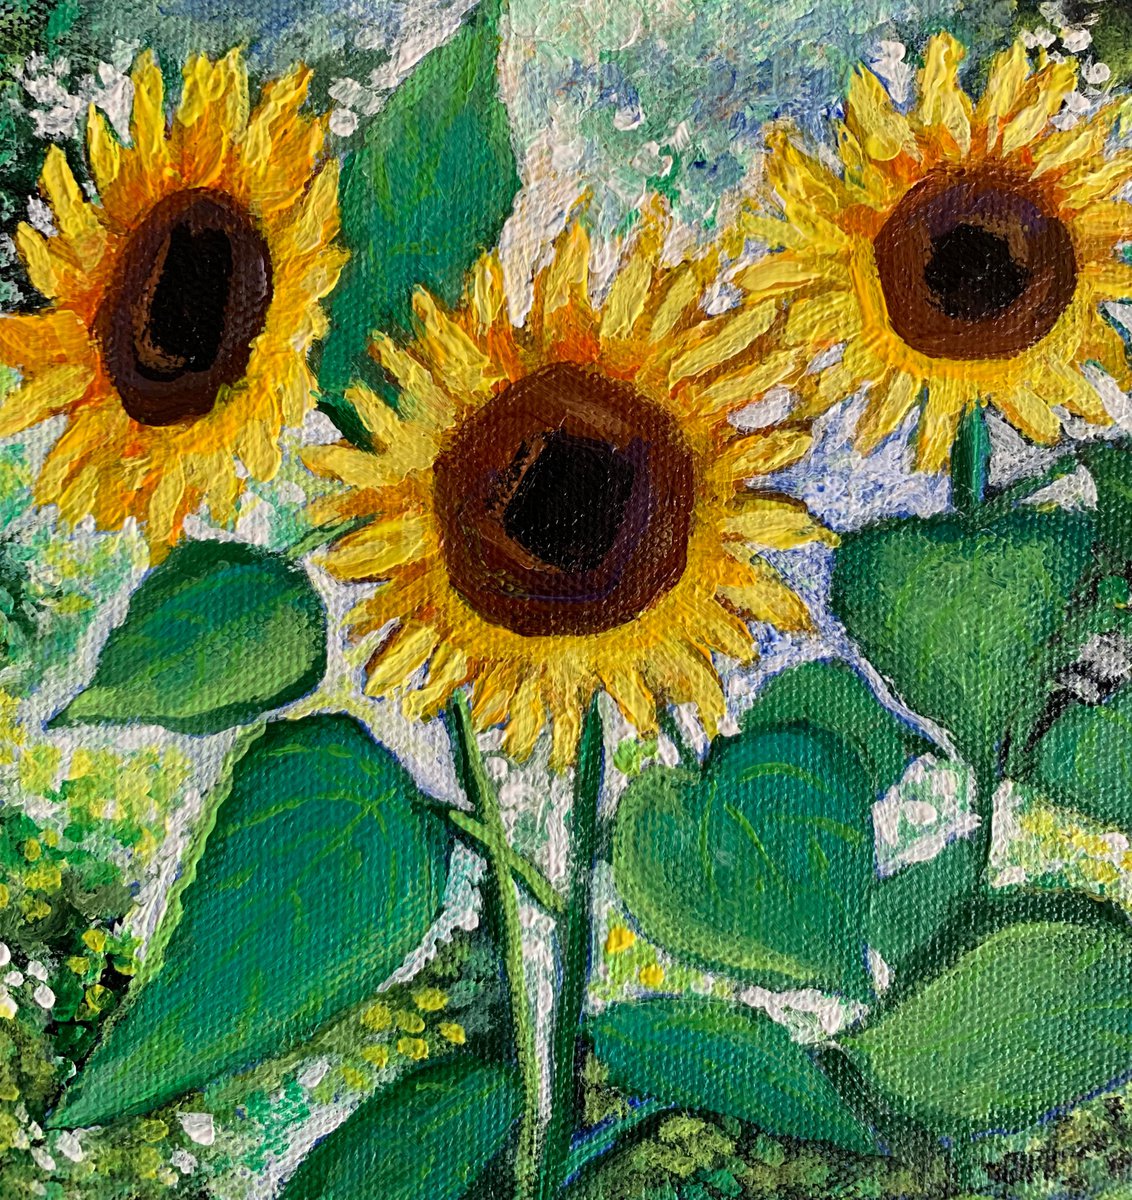 3 sunflowers by Amita Dand